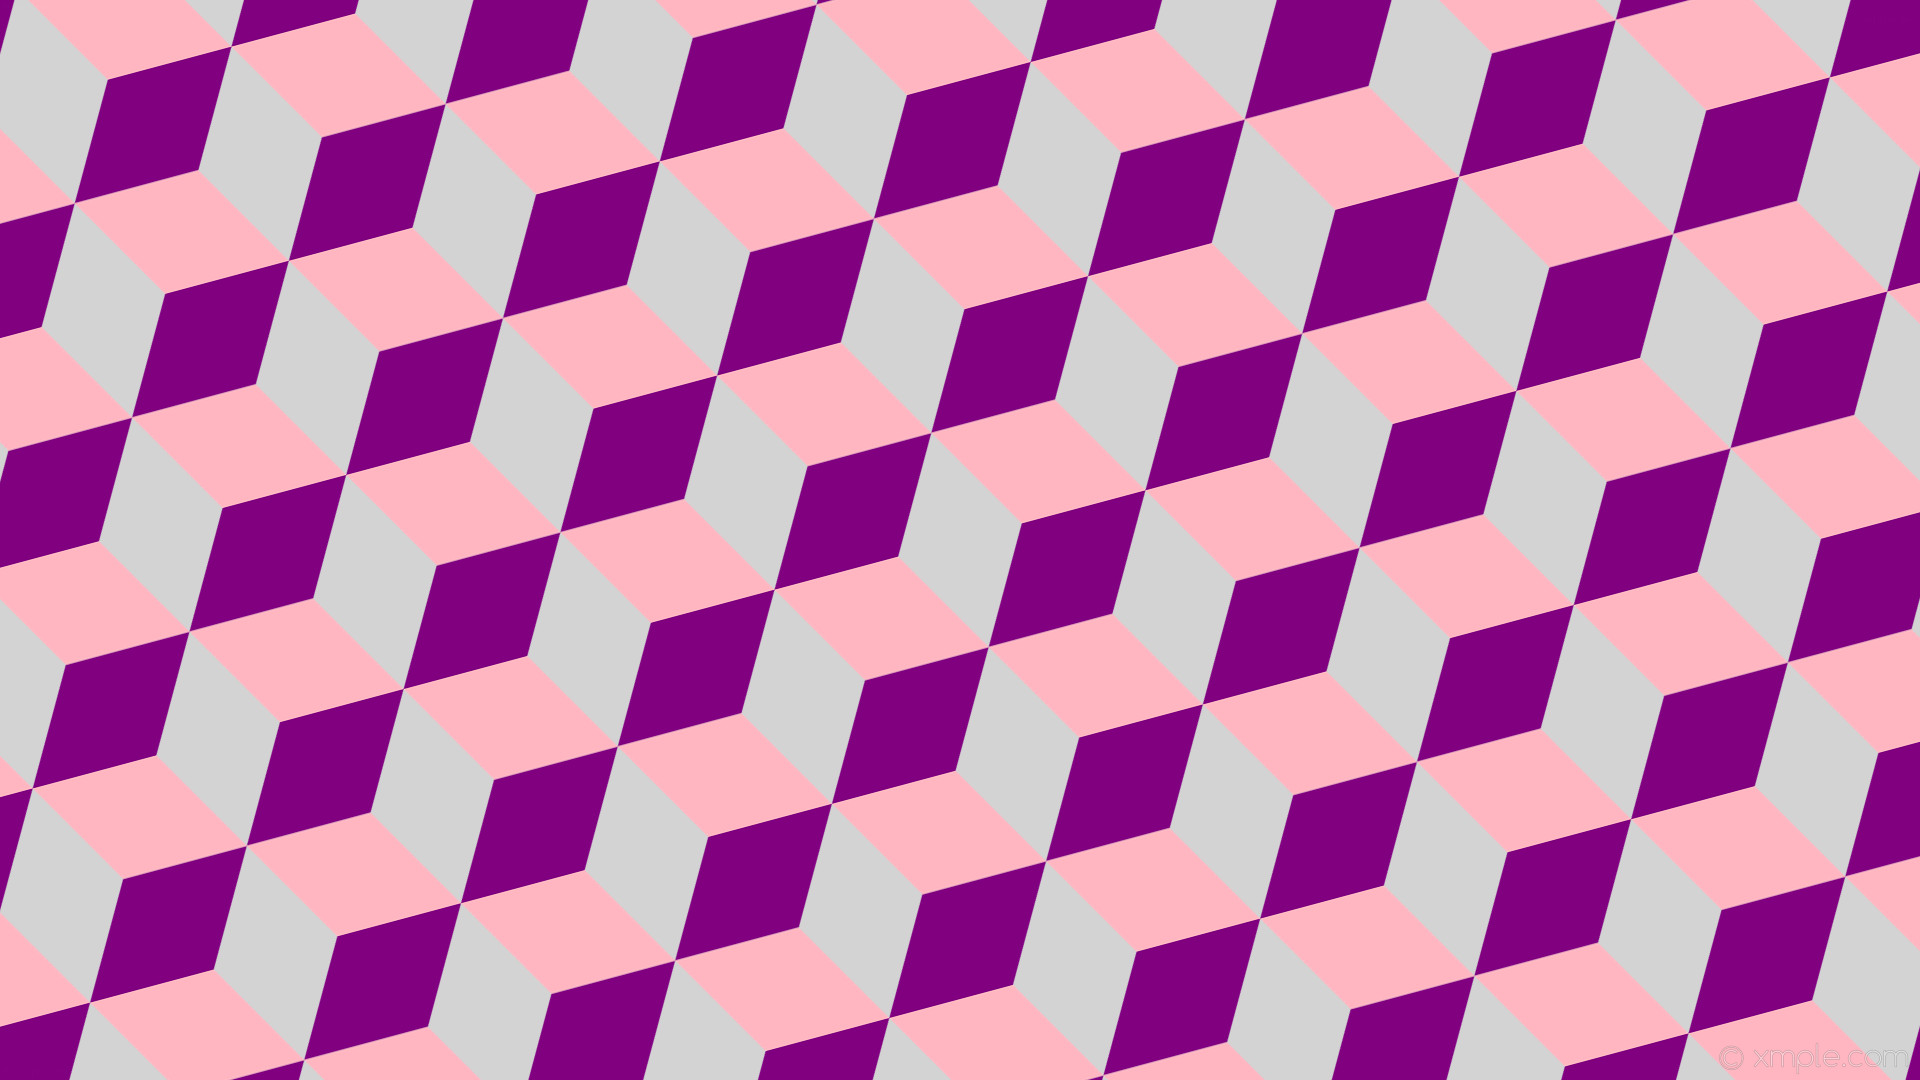 1920x1080 wallpaper grey pink 3d cubes purple light gray light pink #d3d3d3 #800080  #ffb6c1